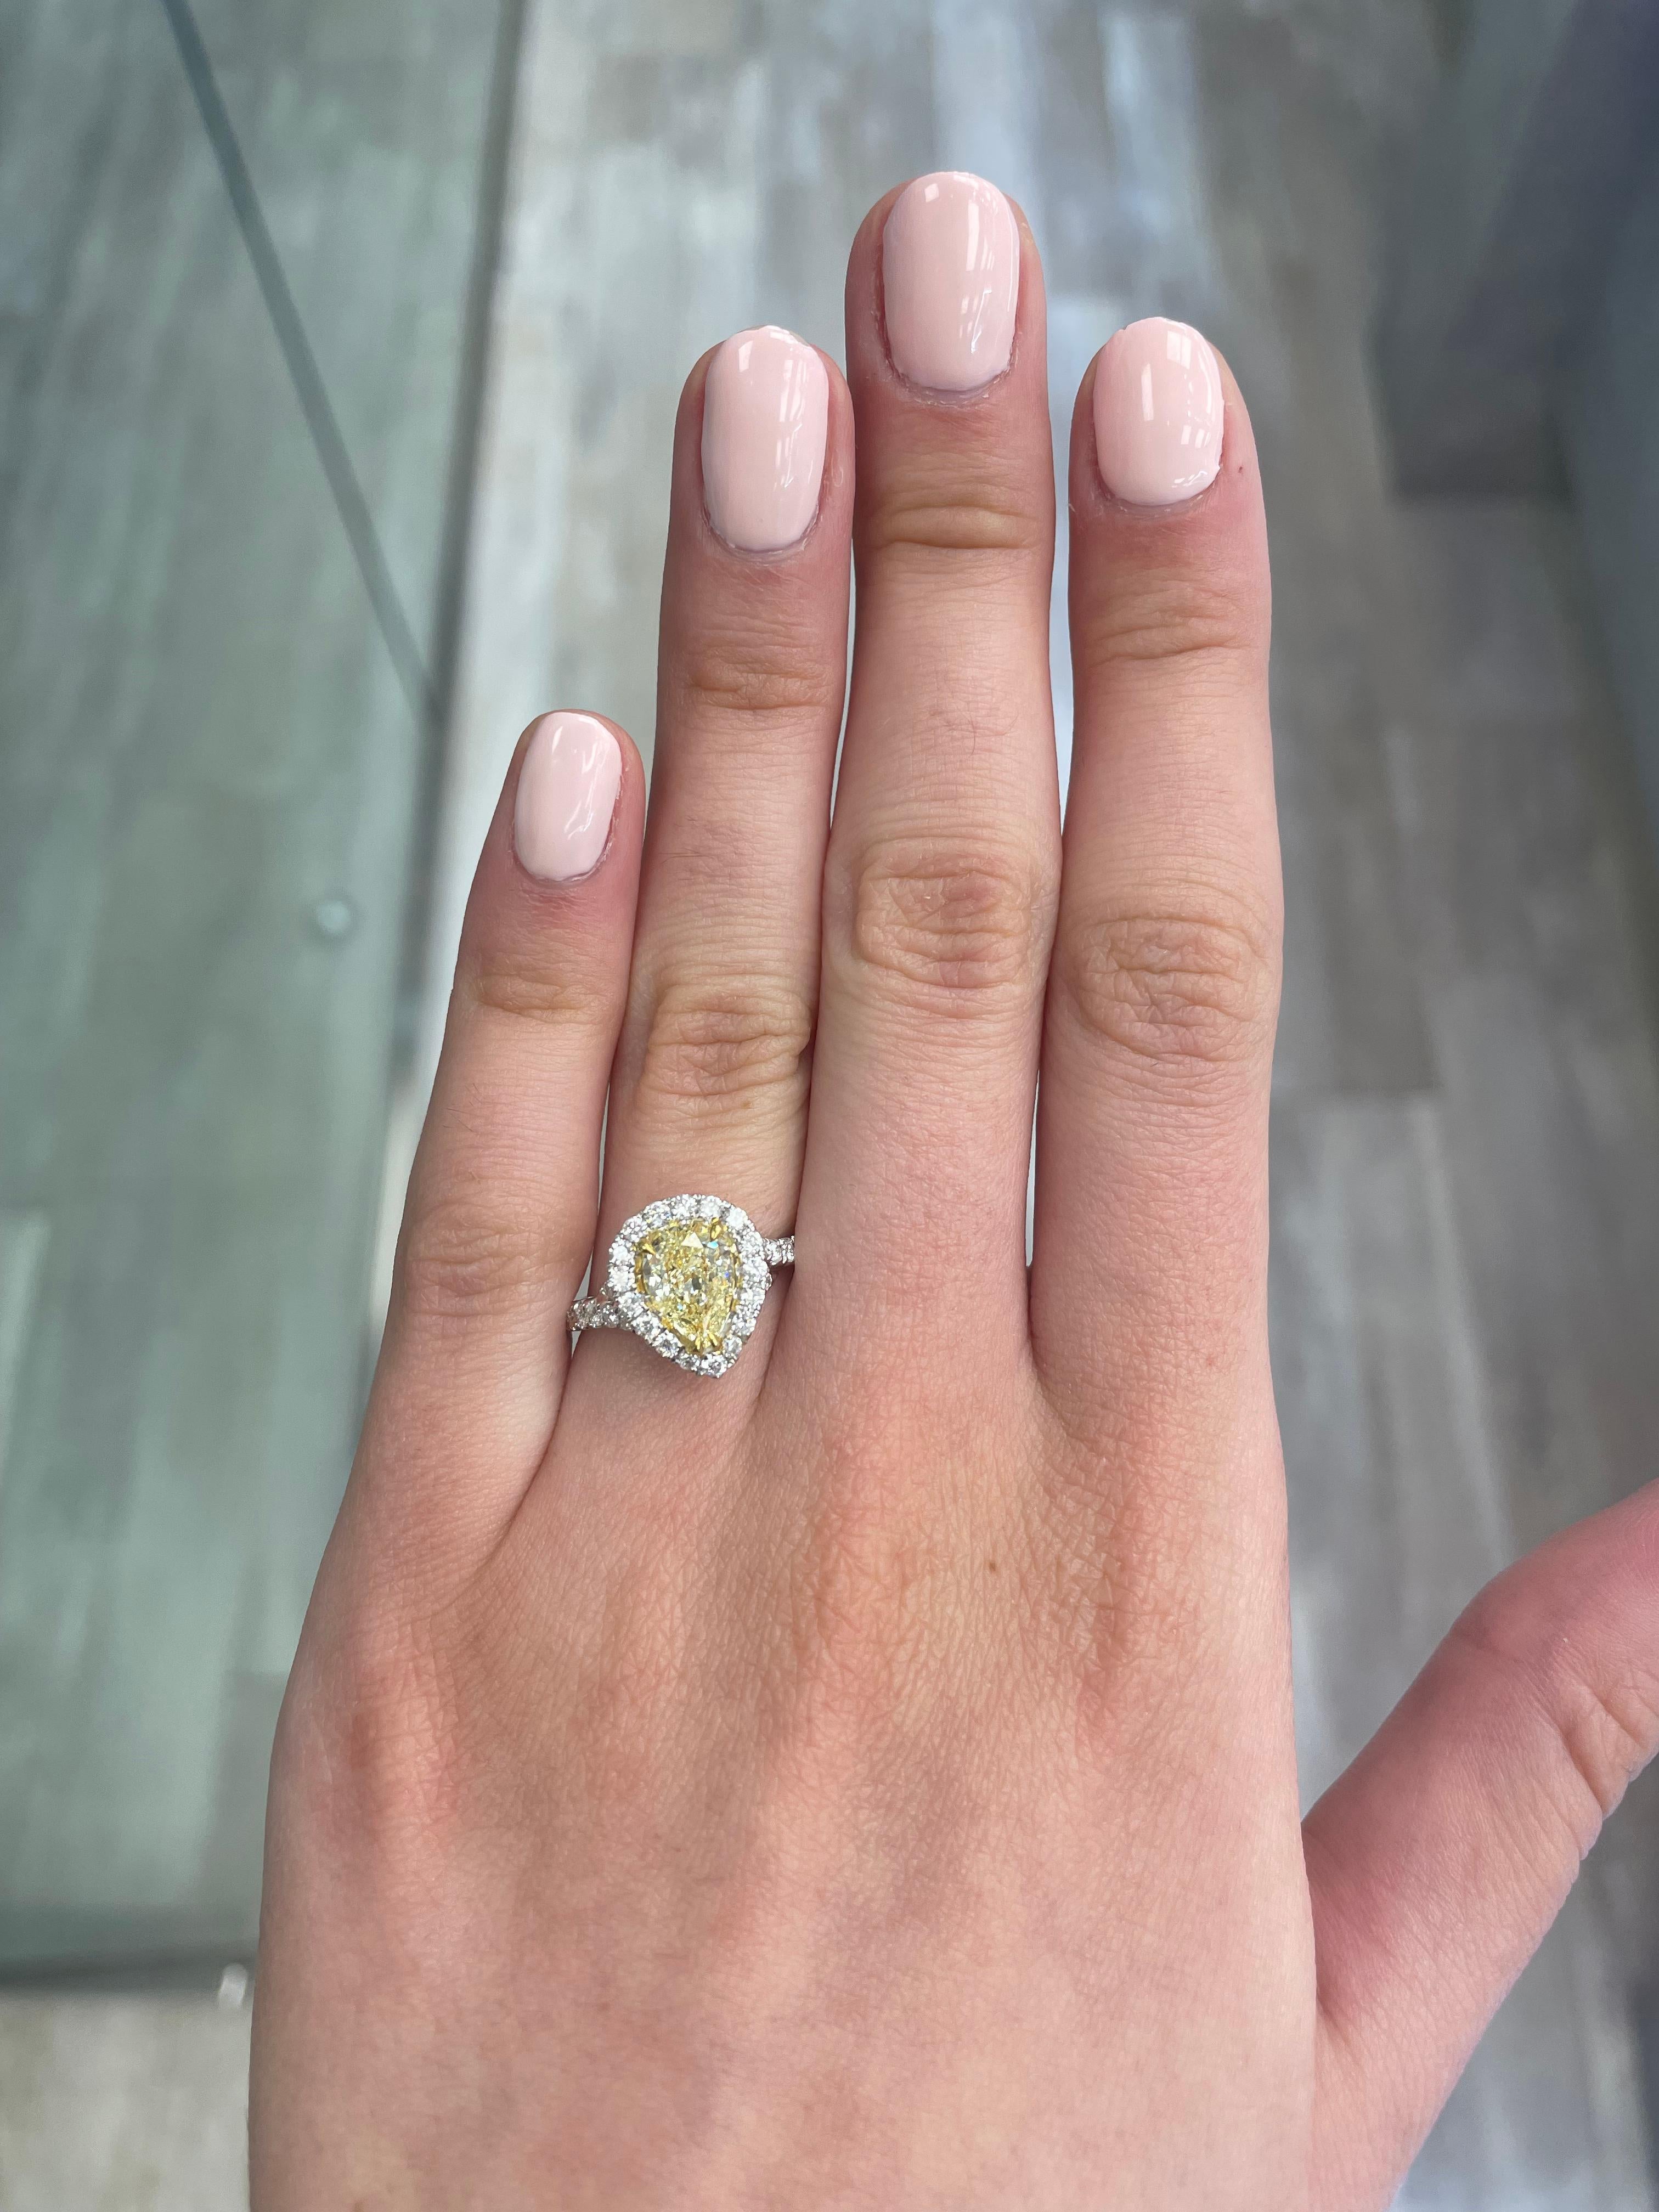 Atemberaubender moderner EGL-zertifizierter gelber Diamant mit Halo-Ring, zweifarbiges 18k Gelb- und Weißgold. Von Alexander Beverly Hills
1,89 Karat Gesamtgewicht der Diamanten.
1,23 Karat birnenförmiger Diamant der Farbe Fancy Yellow und der